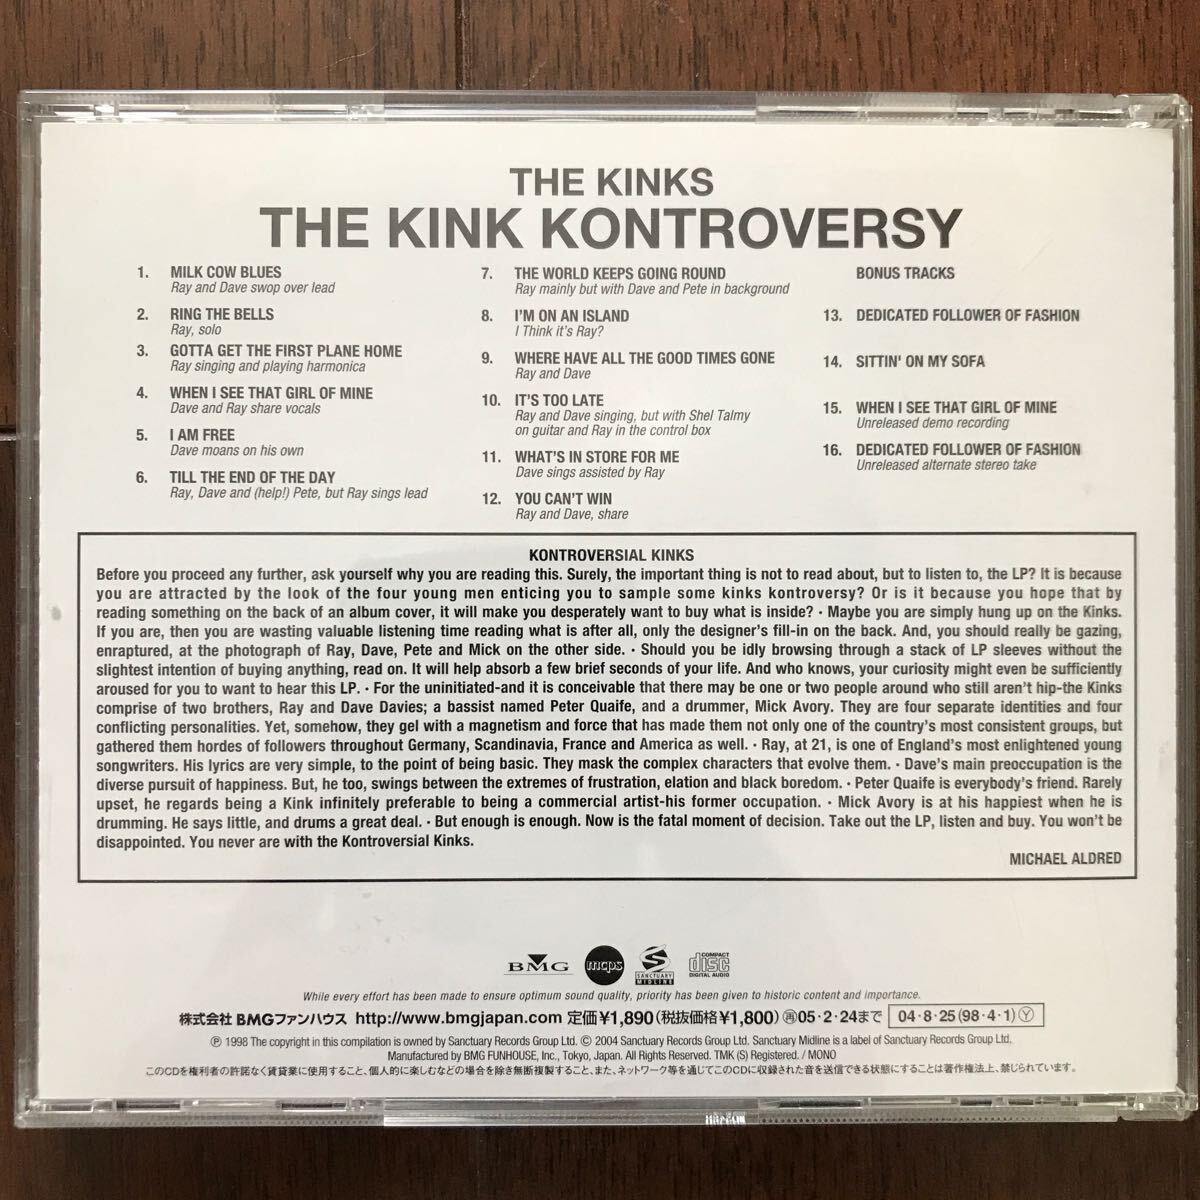 美品CD THE KINKS/THE KINK KONTROVERSY 日本盤 キンクス/キンク・コントラヴァーシー+4_画像2